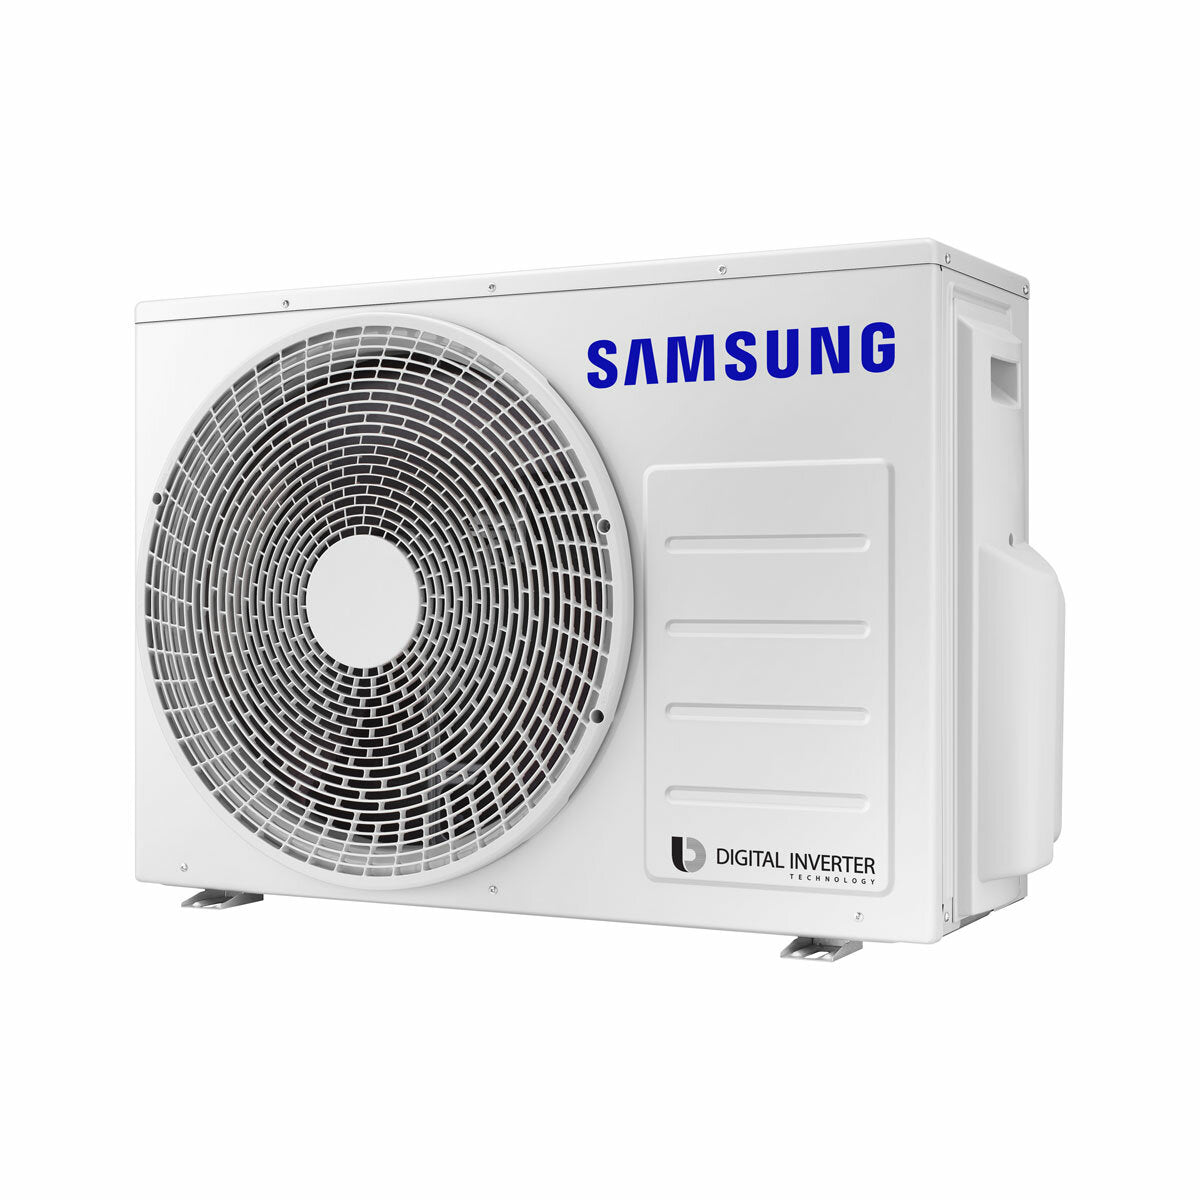 Samsung Cebu Wi-Fi Trial Split Klimaanlage 7000 + 7000 + 12000 BTU Wechselrichter A++ WLAN Außengerät 5,2 kW